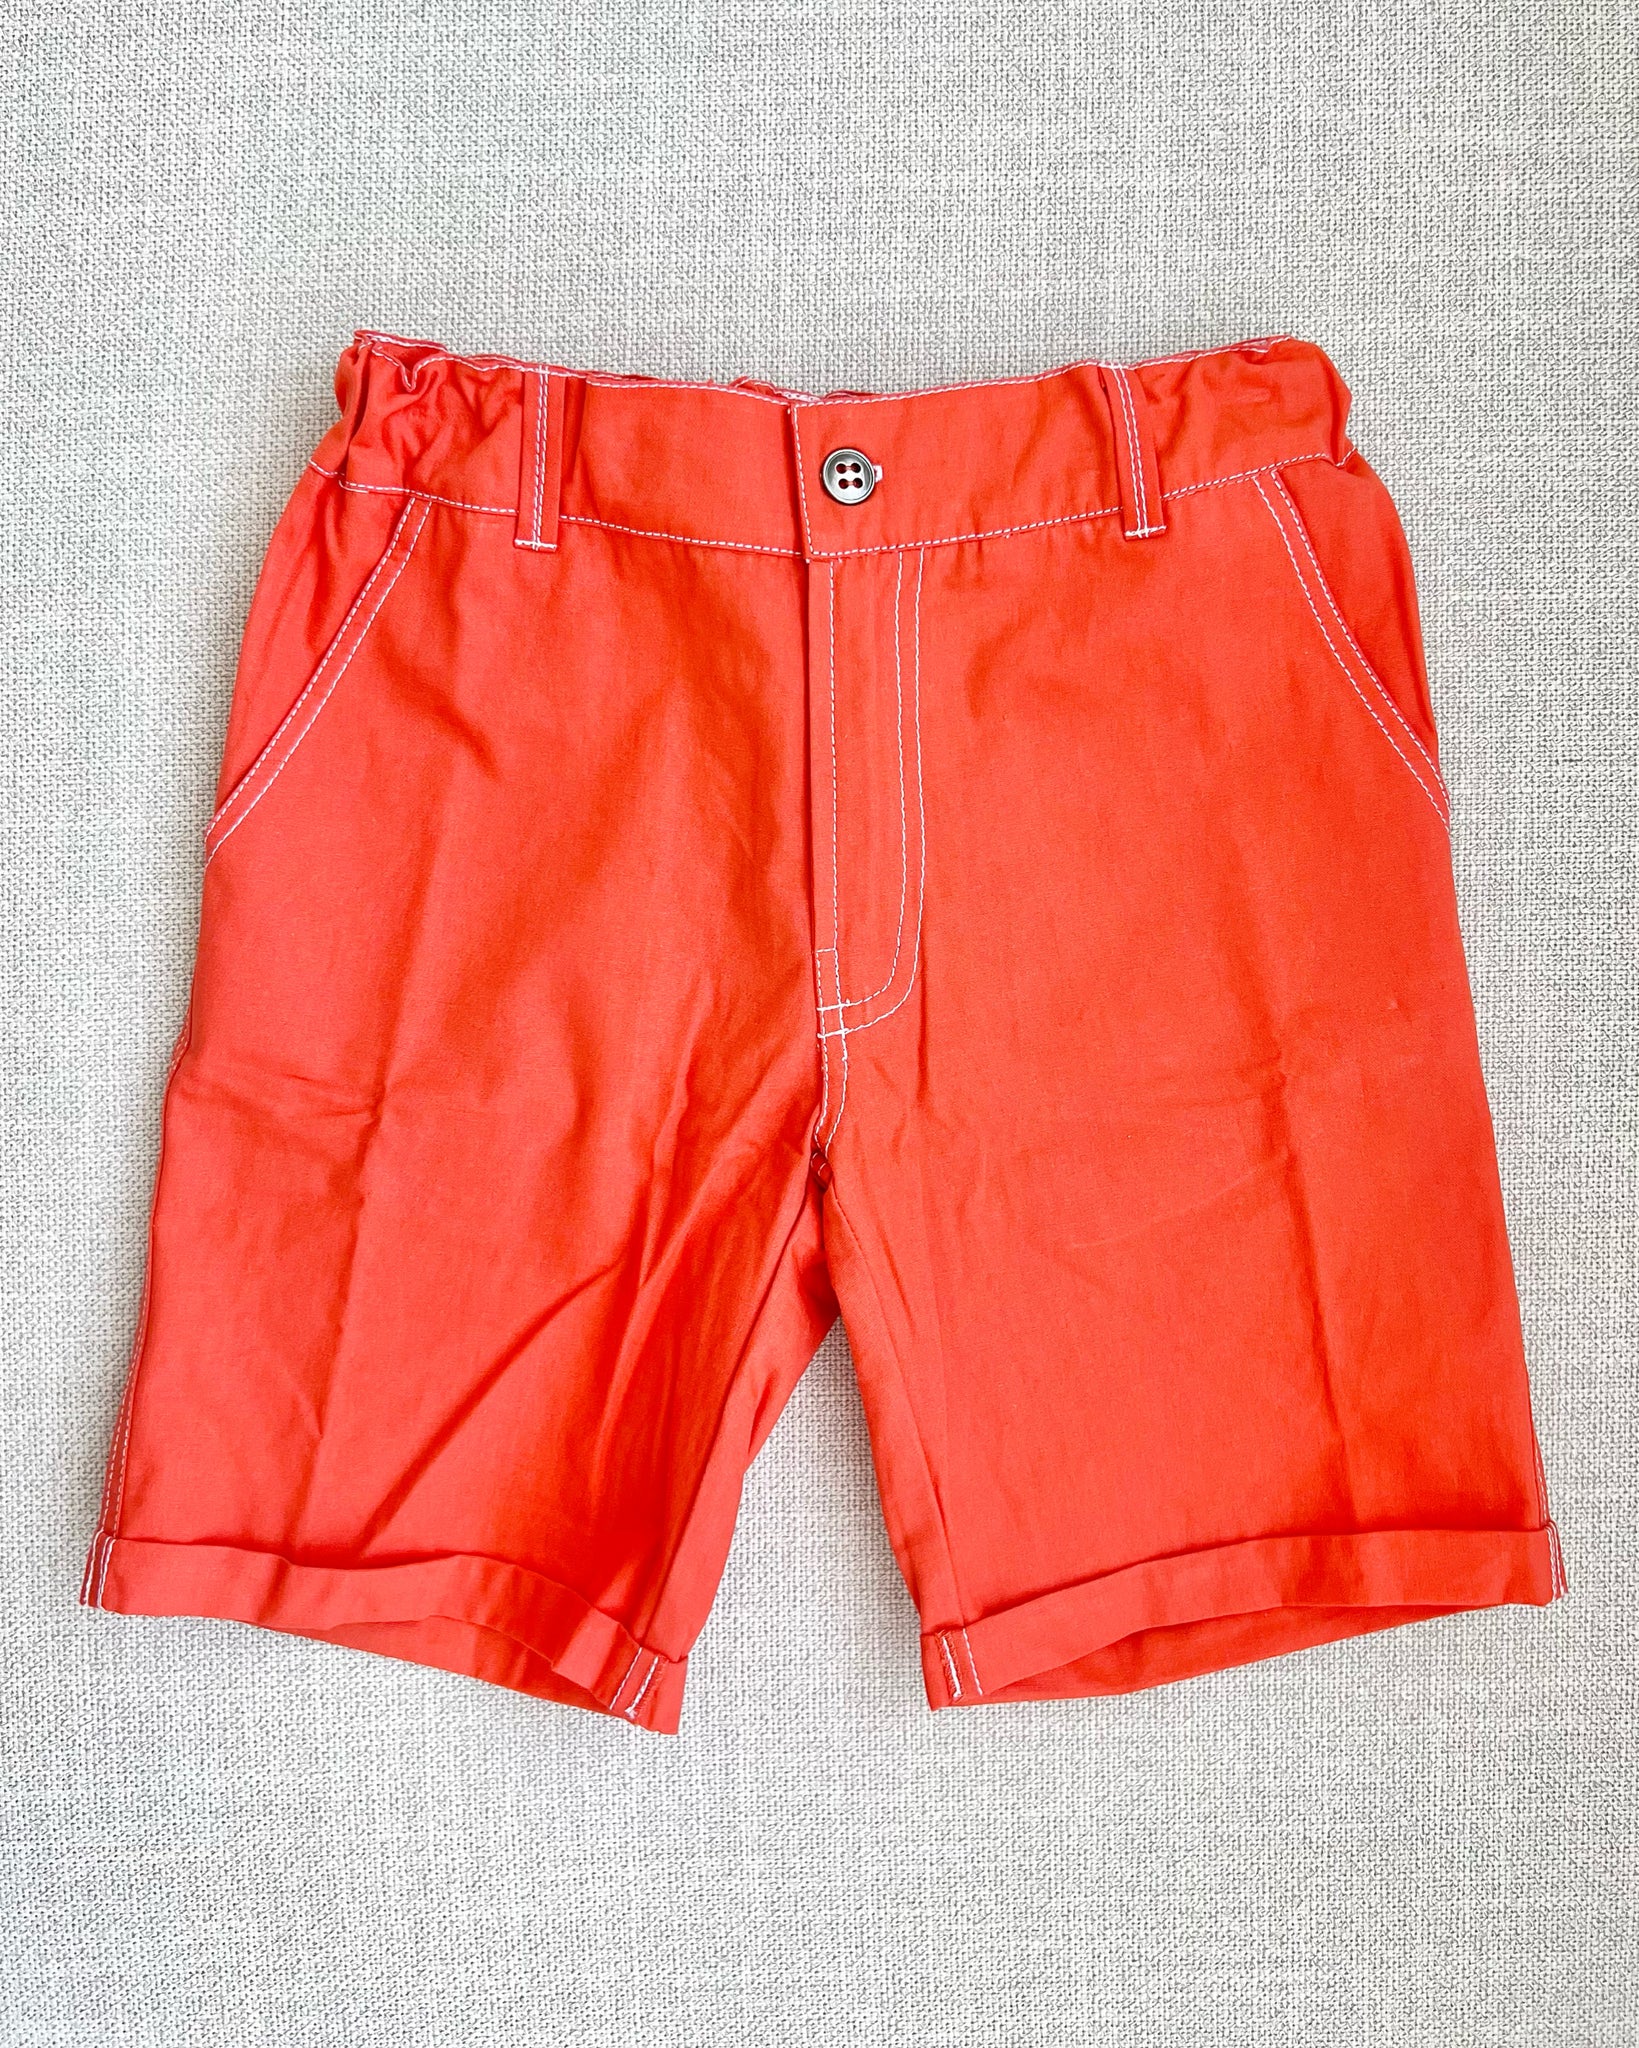 Poppy Red Boy Shorts